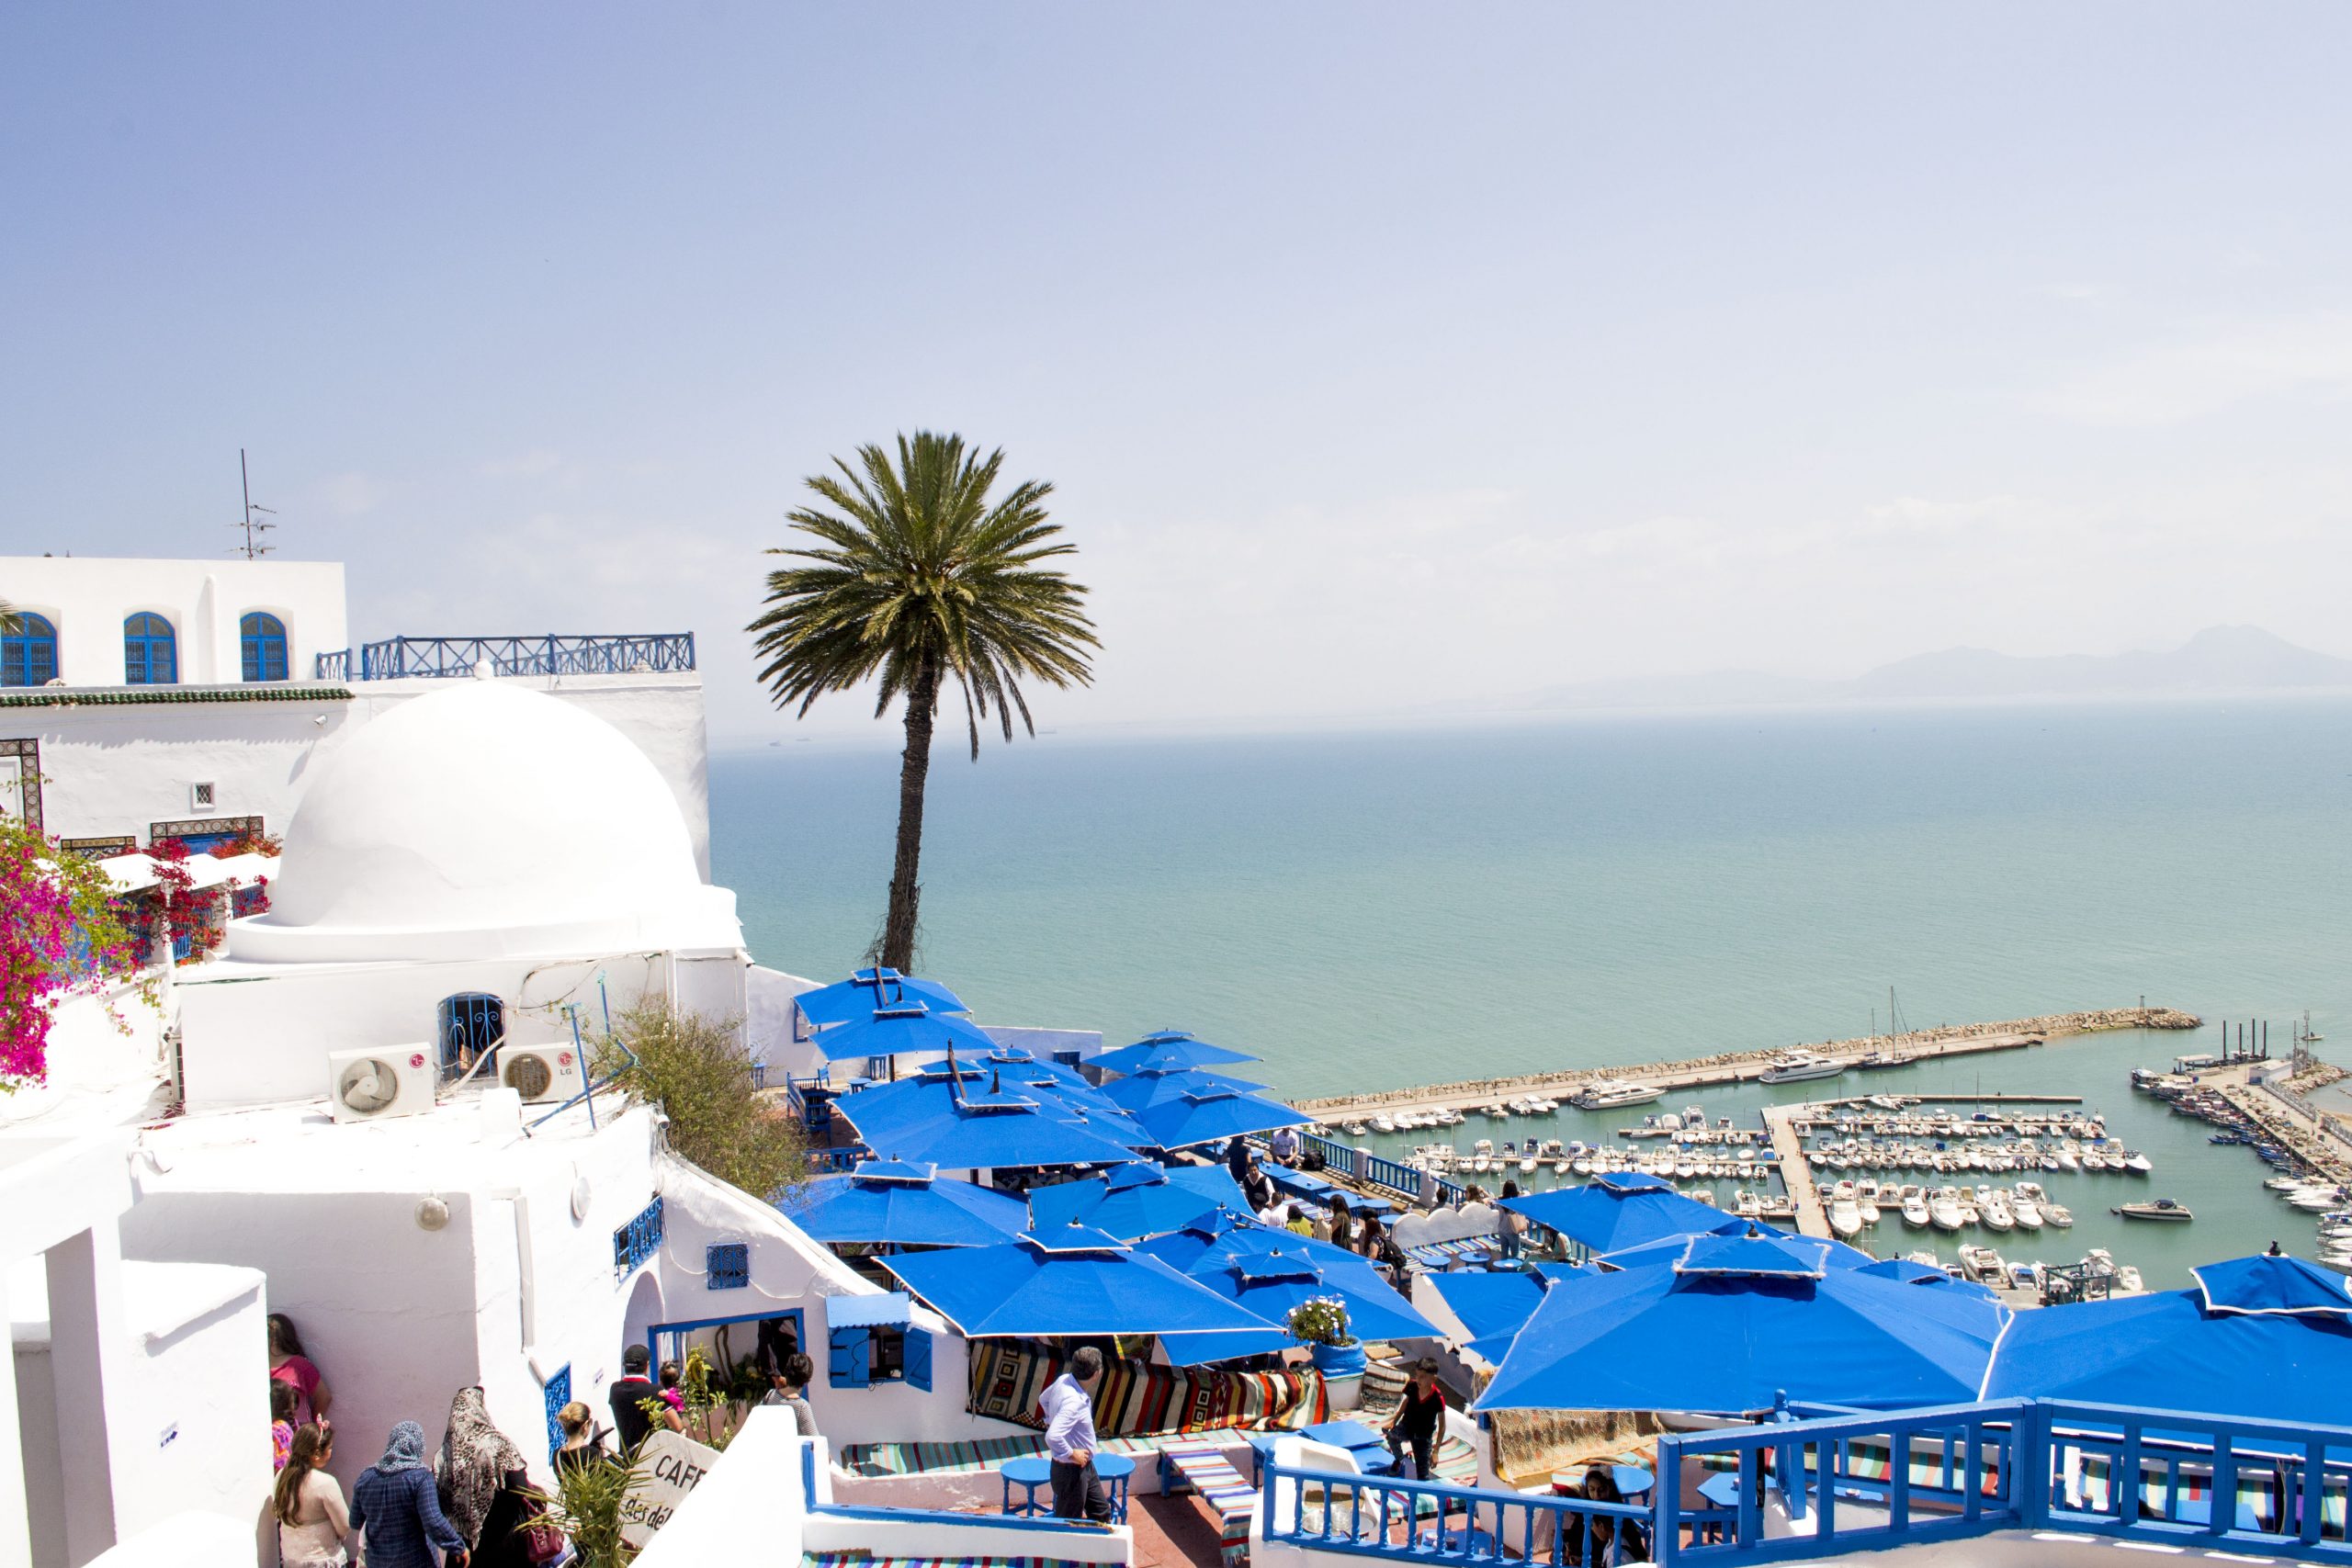 Top 5 honeymoon spots in Tunisia in 2019